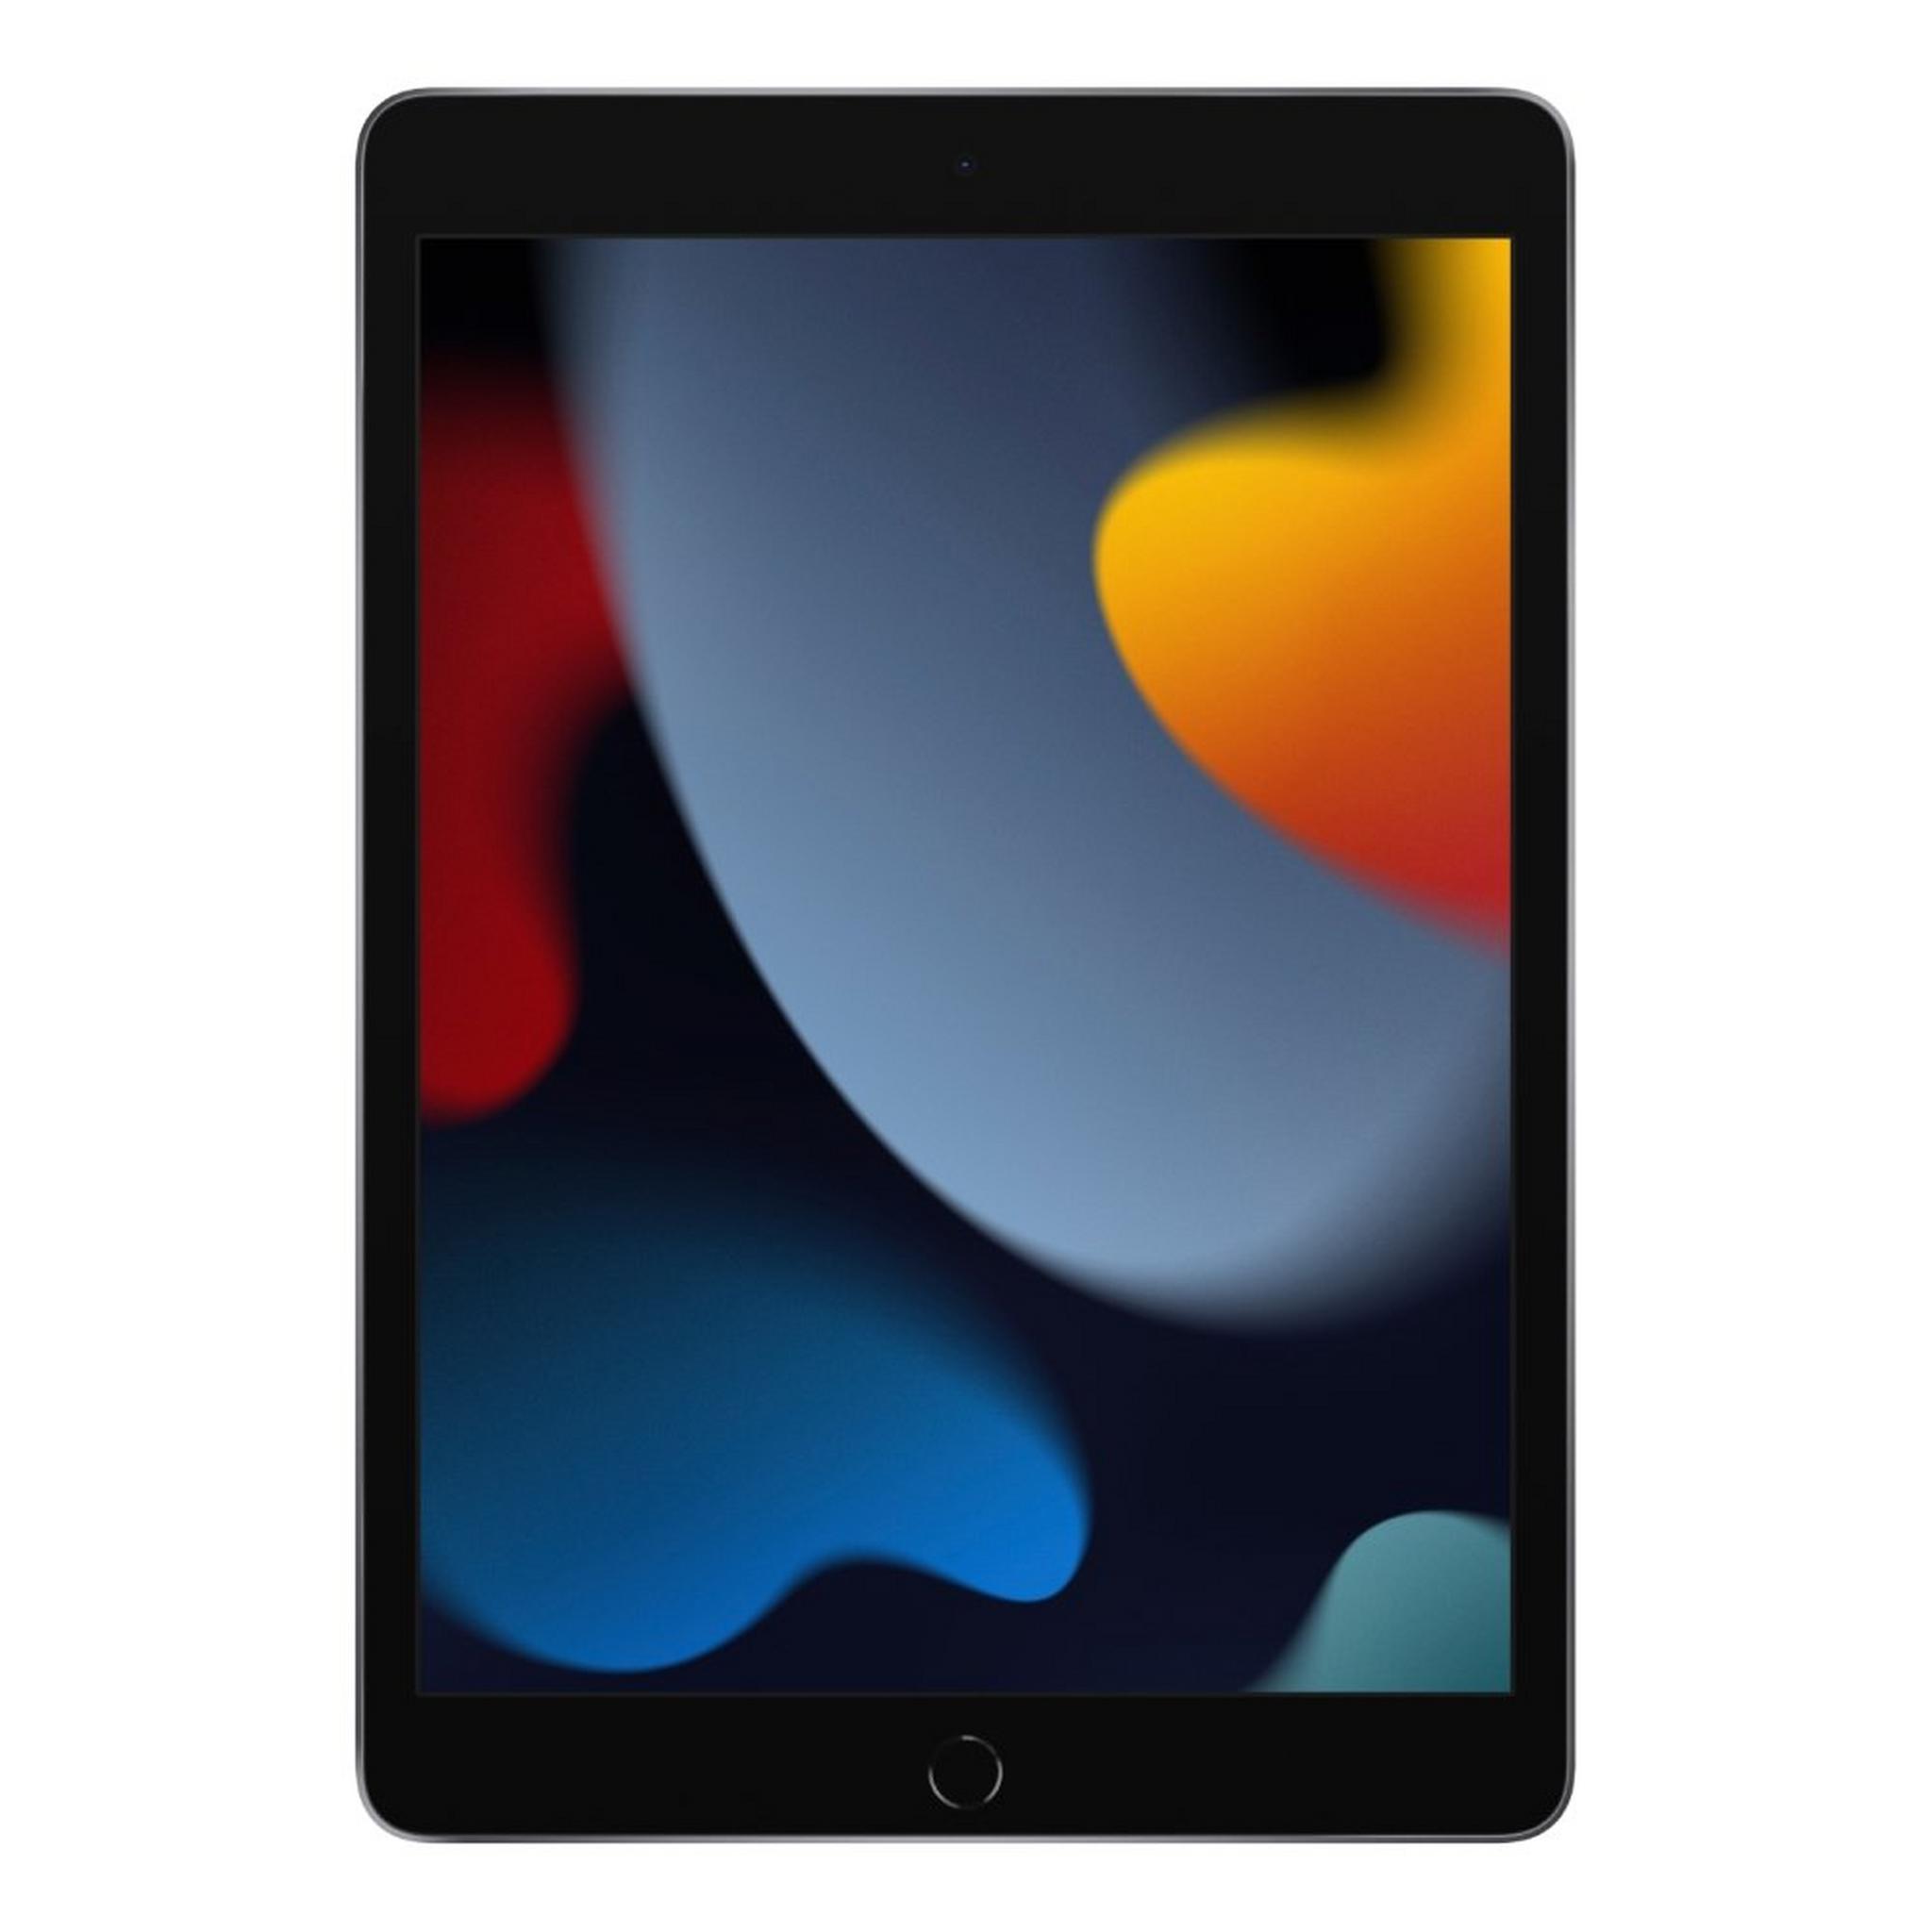 Apple iPad 2021 WiFi 64GB - Space Grey